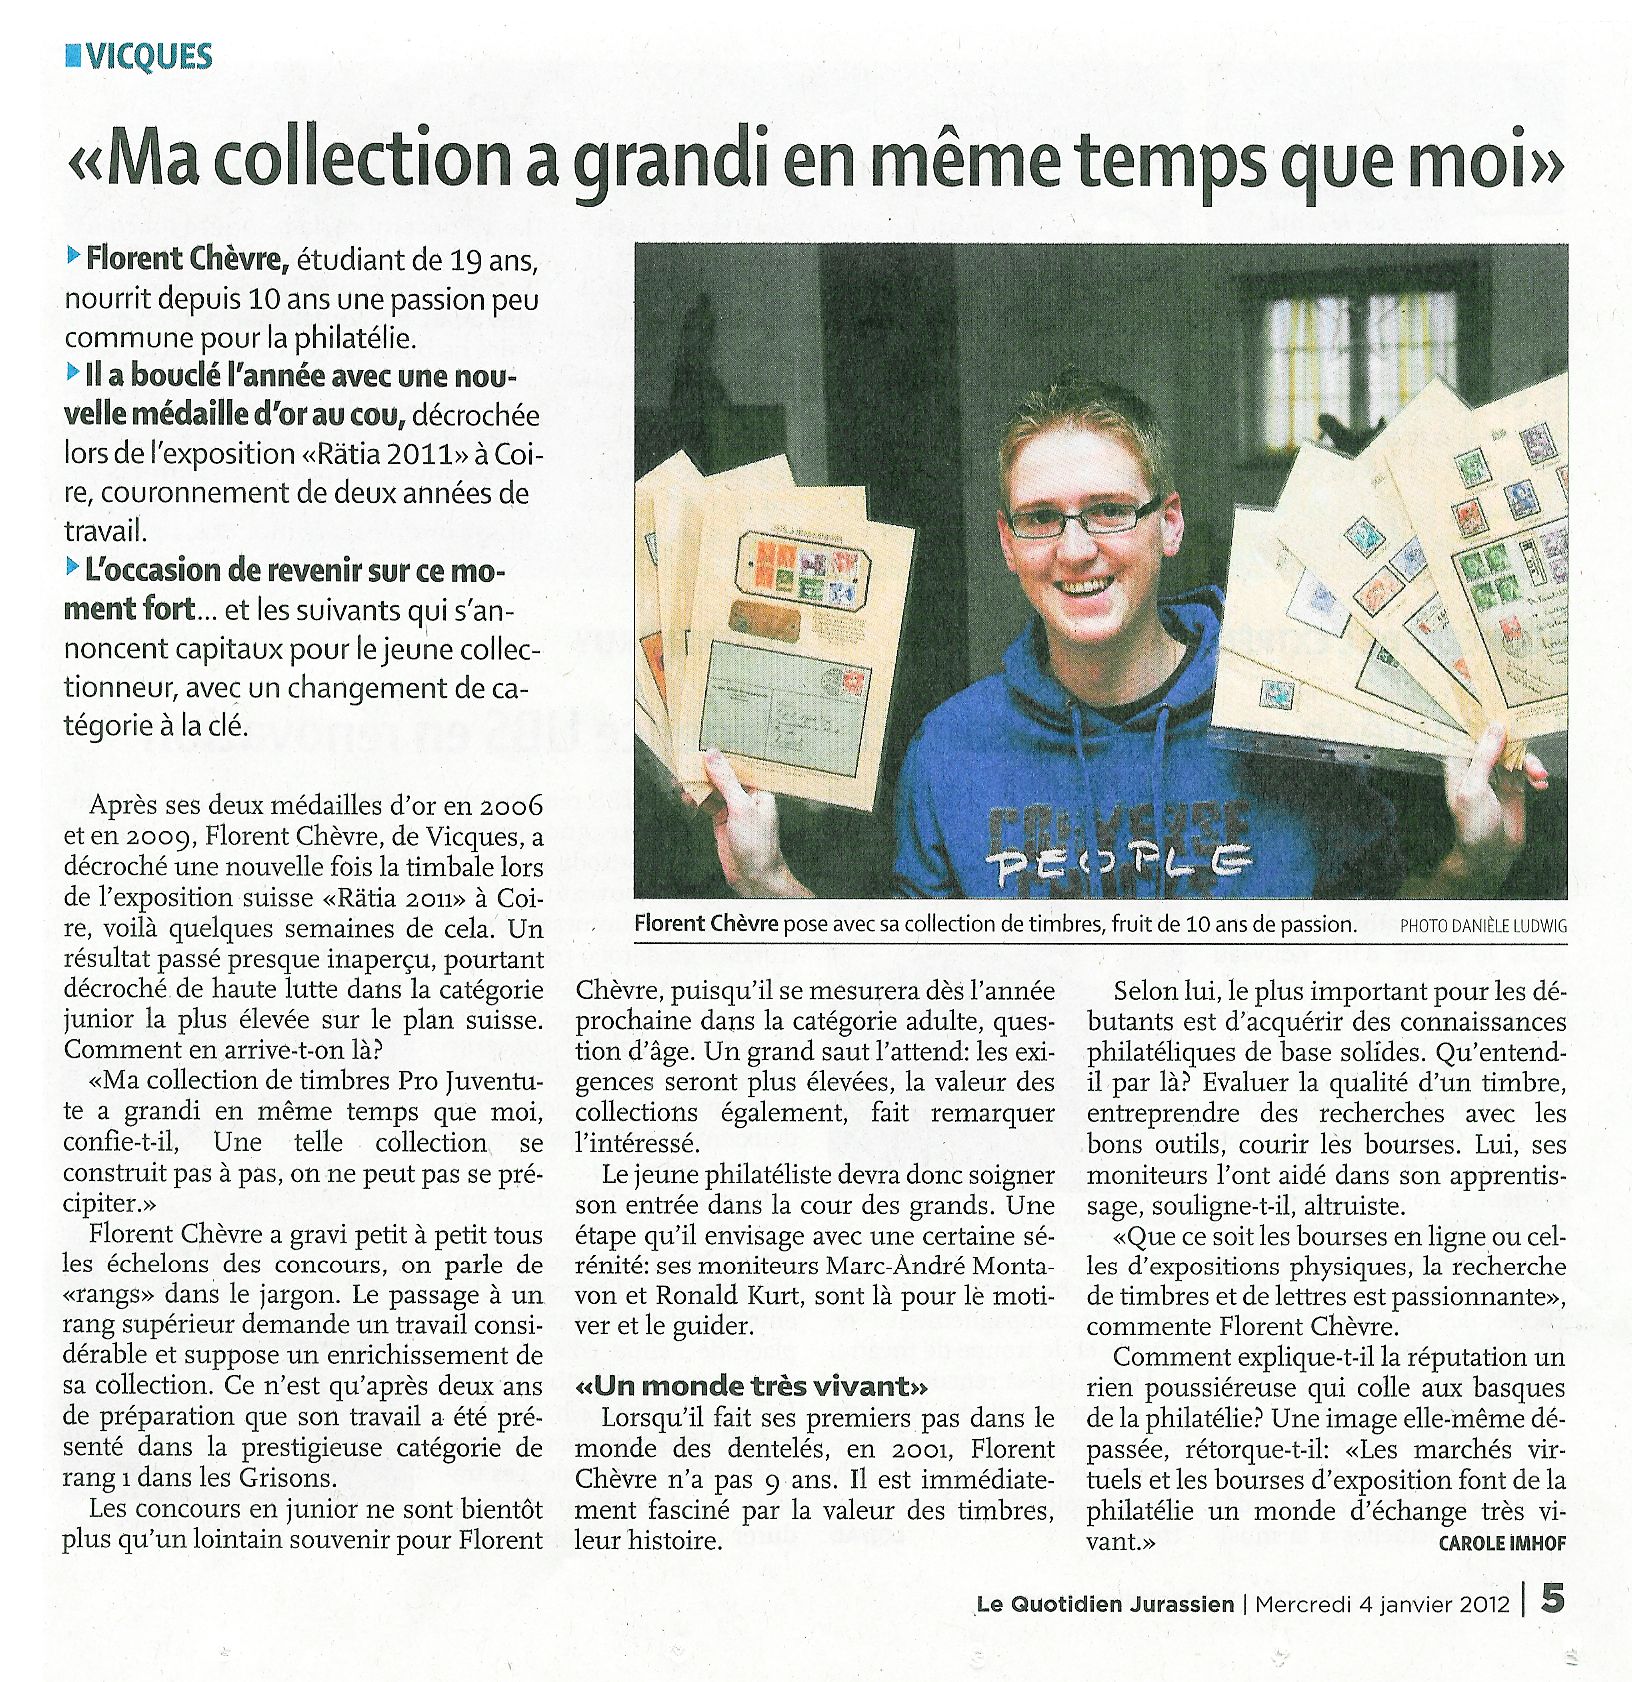  Quotidien jurassien - Florent Chèvre, Vicques - 4.1.2012